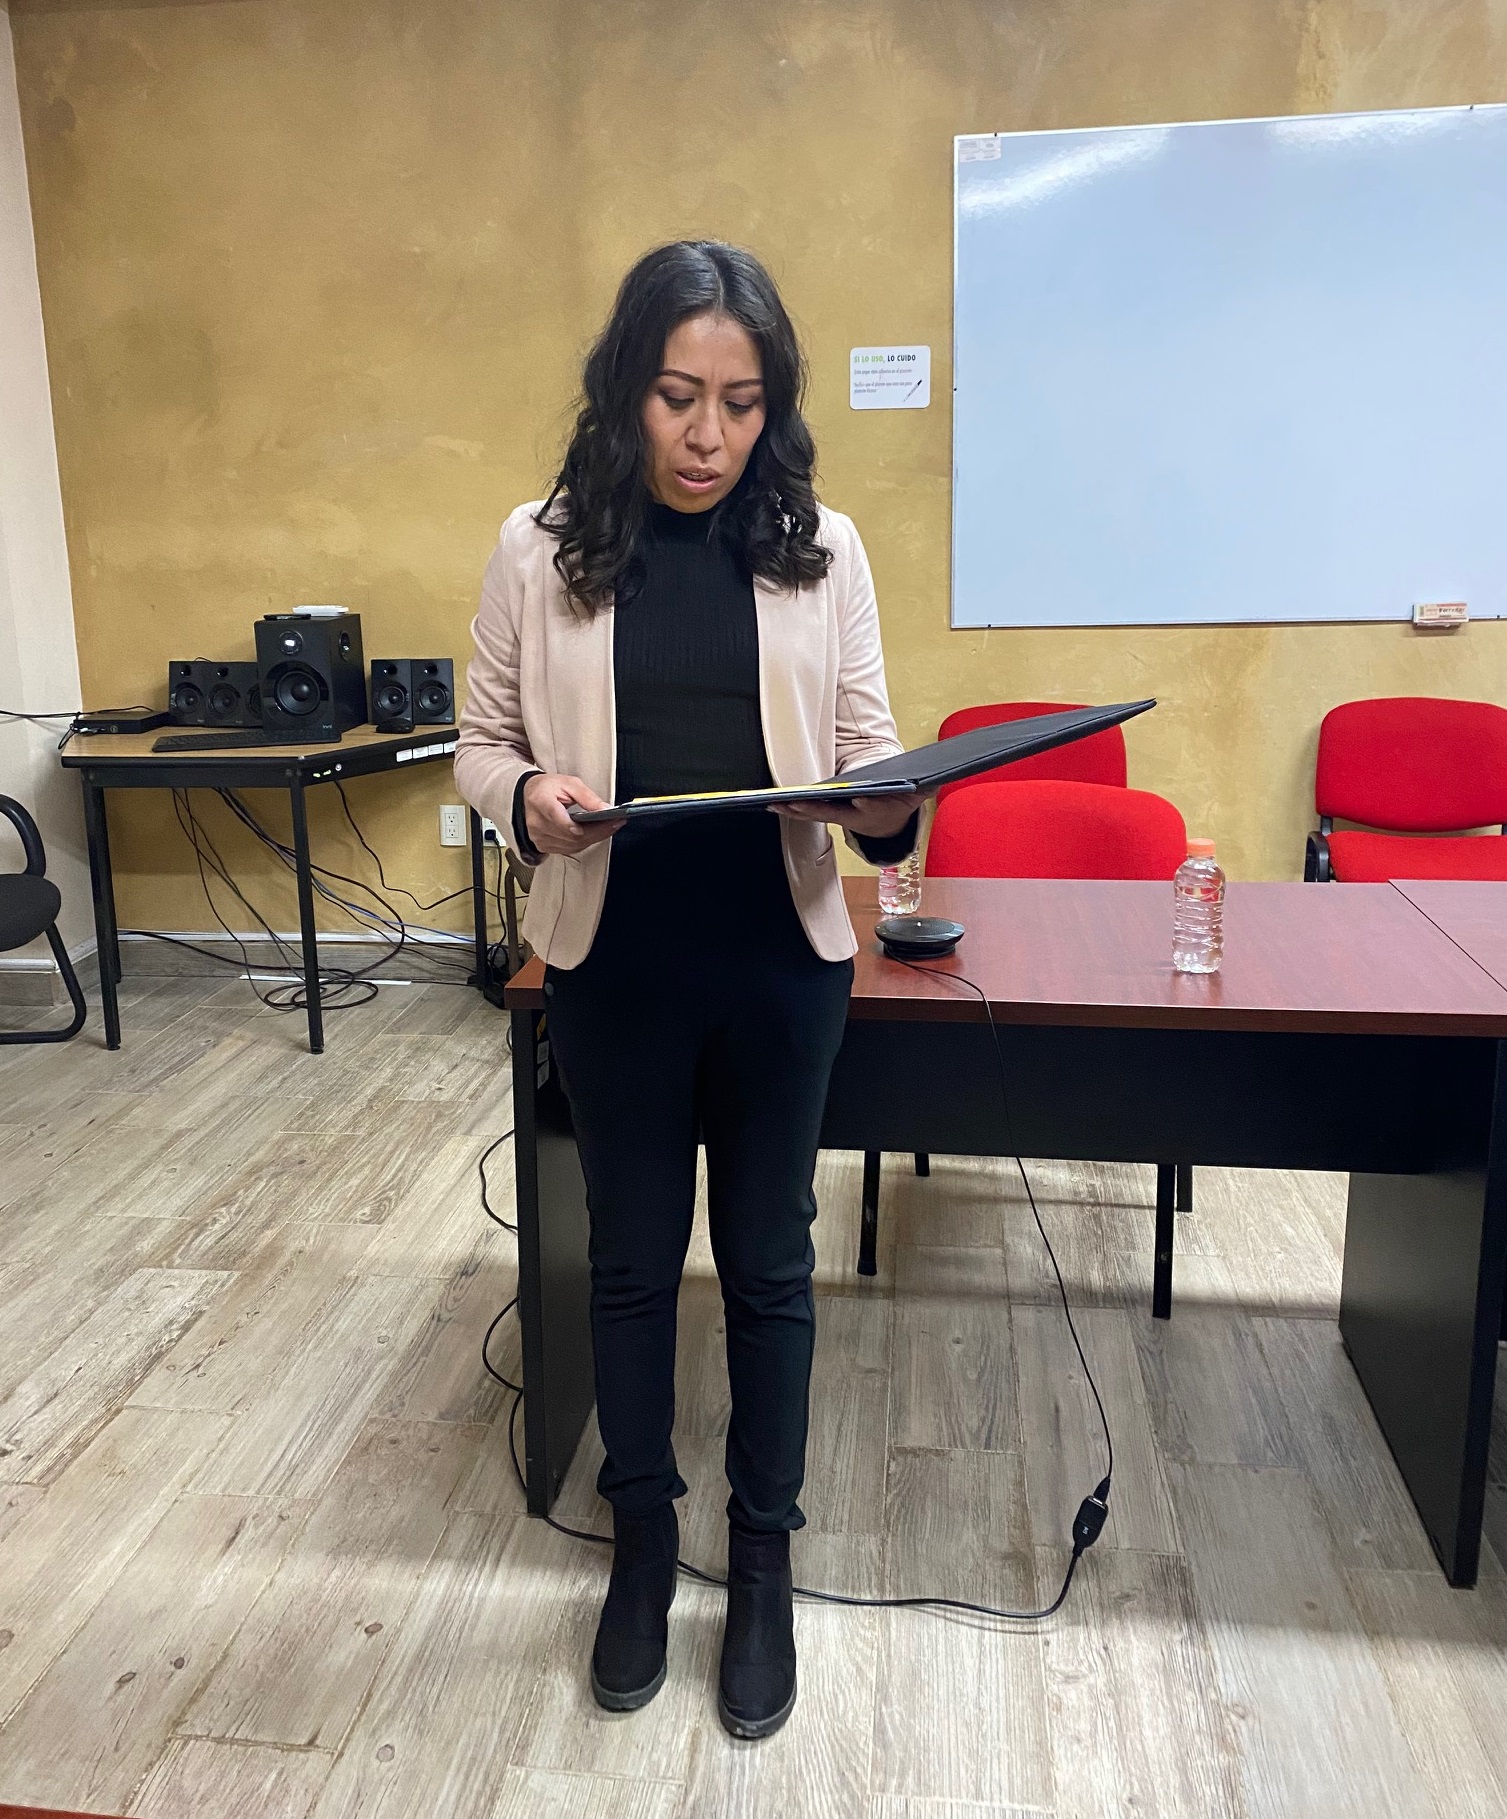 Maricruz Gómez obtiene el grado de Maestra en Ciencias con la tesis denominada “Factores sociales y epidemiológicos vinculados a la sintomatología depresiva en mujeres de Chiapas, México”